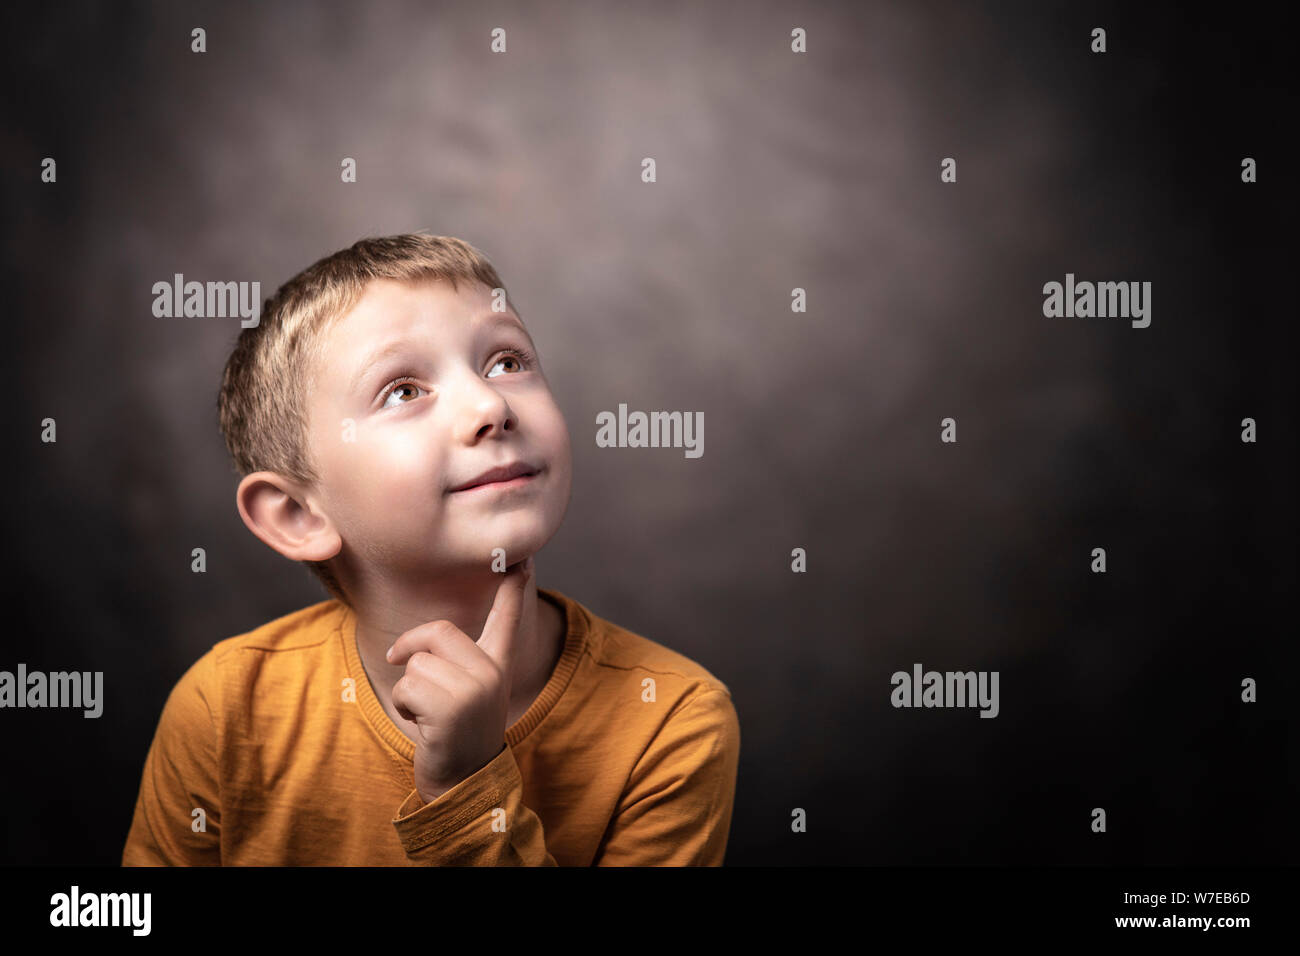 Retrato de estudio de un niño de 6 años mirando hacia arriba con una expresión pensativa. Foto de stock